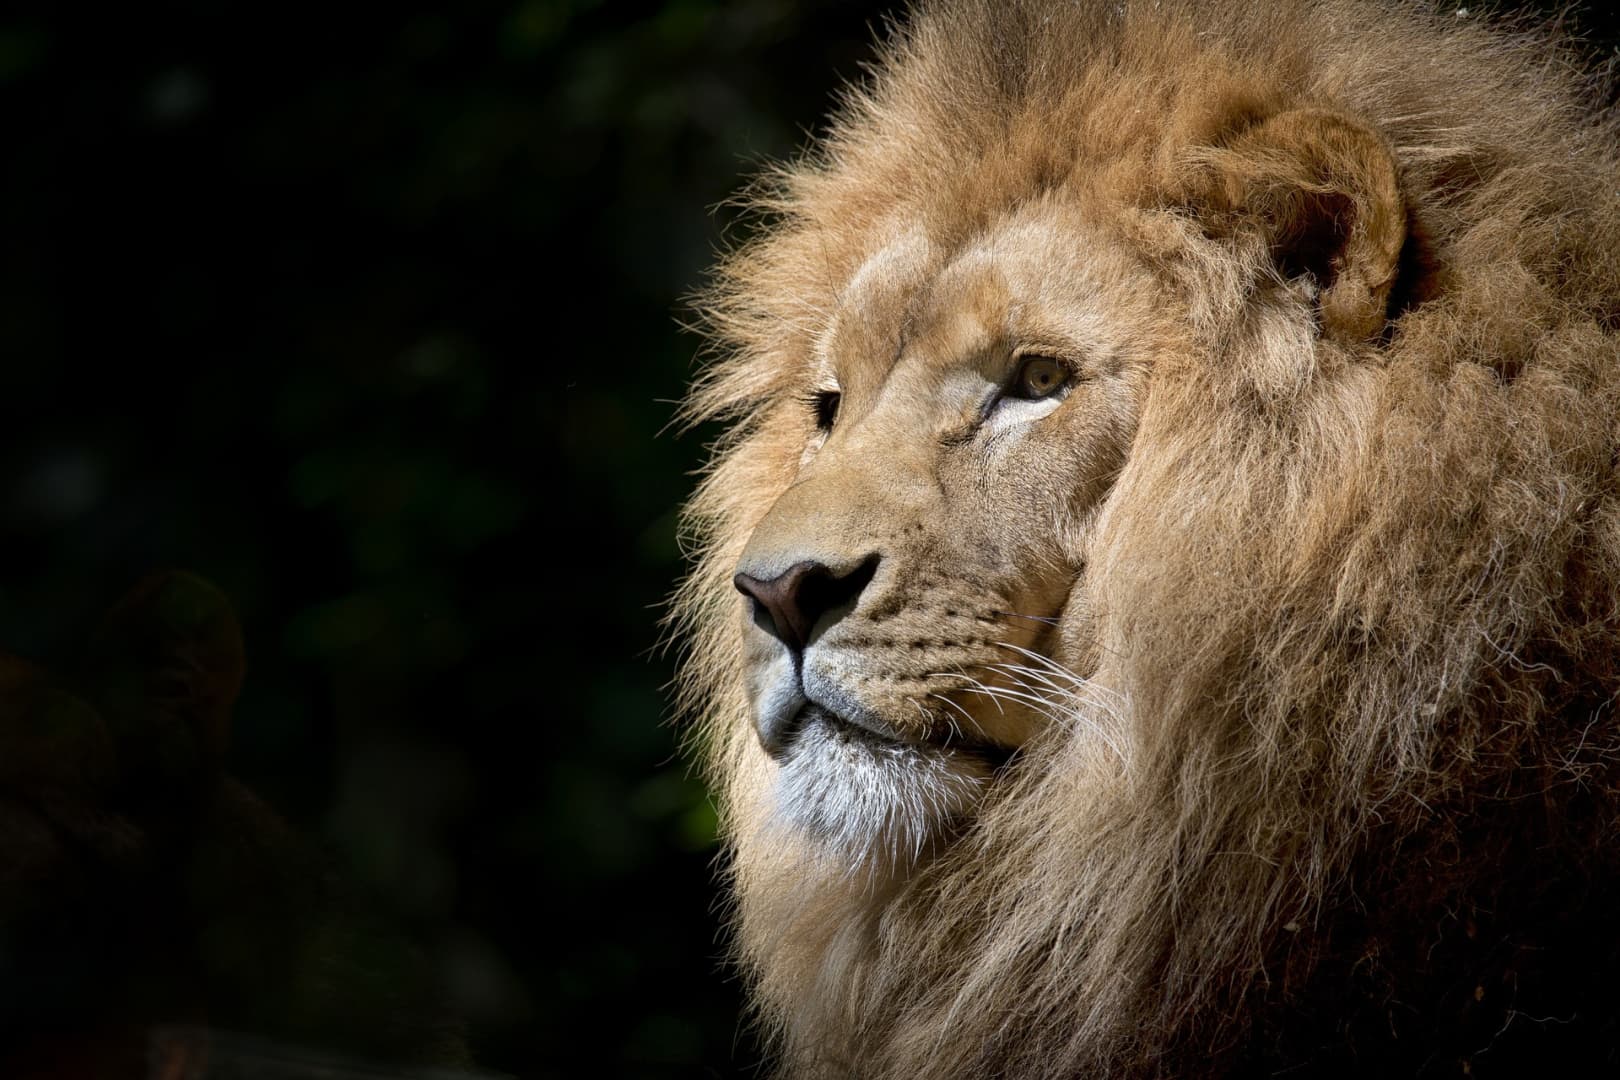 Megdöbbentő dolgok derültek ki az állatkertről, ahol a halálos oroszlántámadás történt – a többi ragadozót is elaltathatják